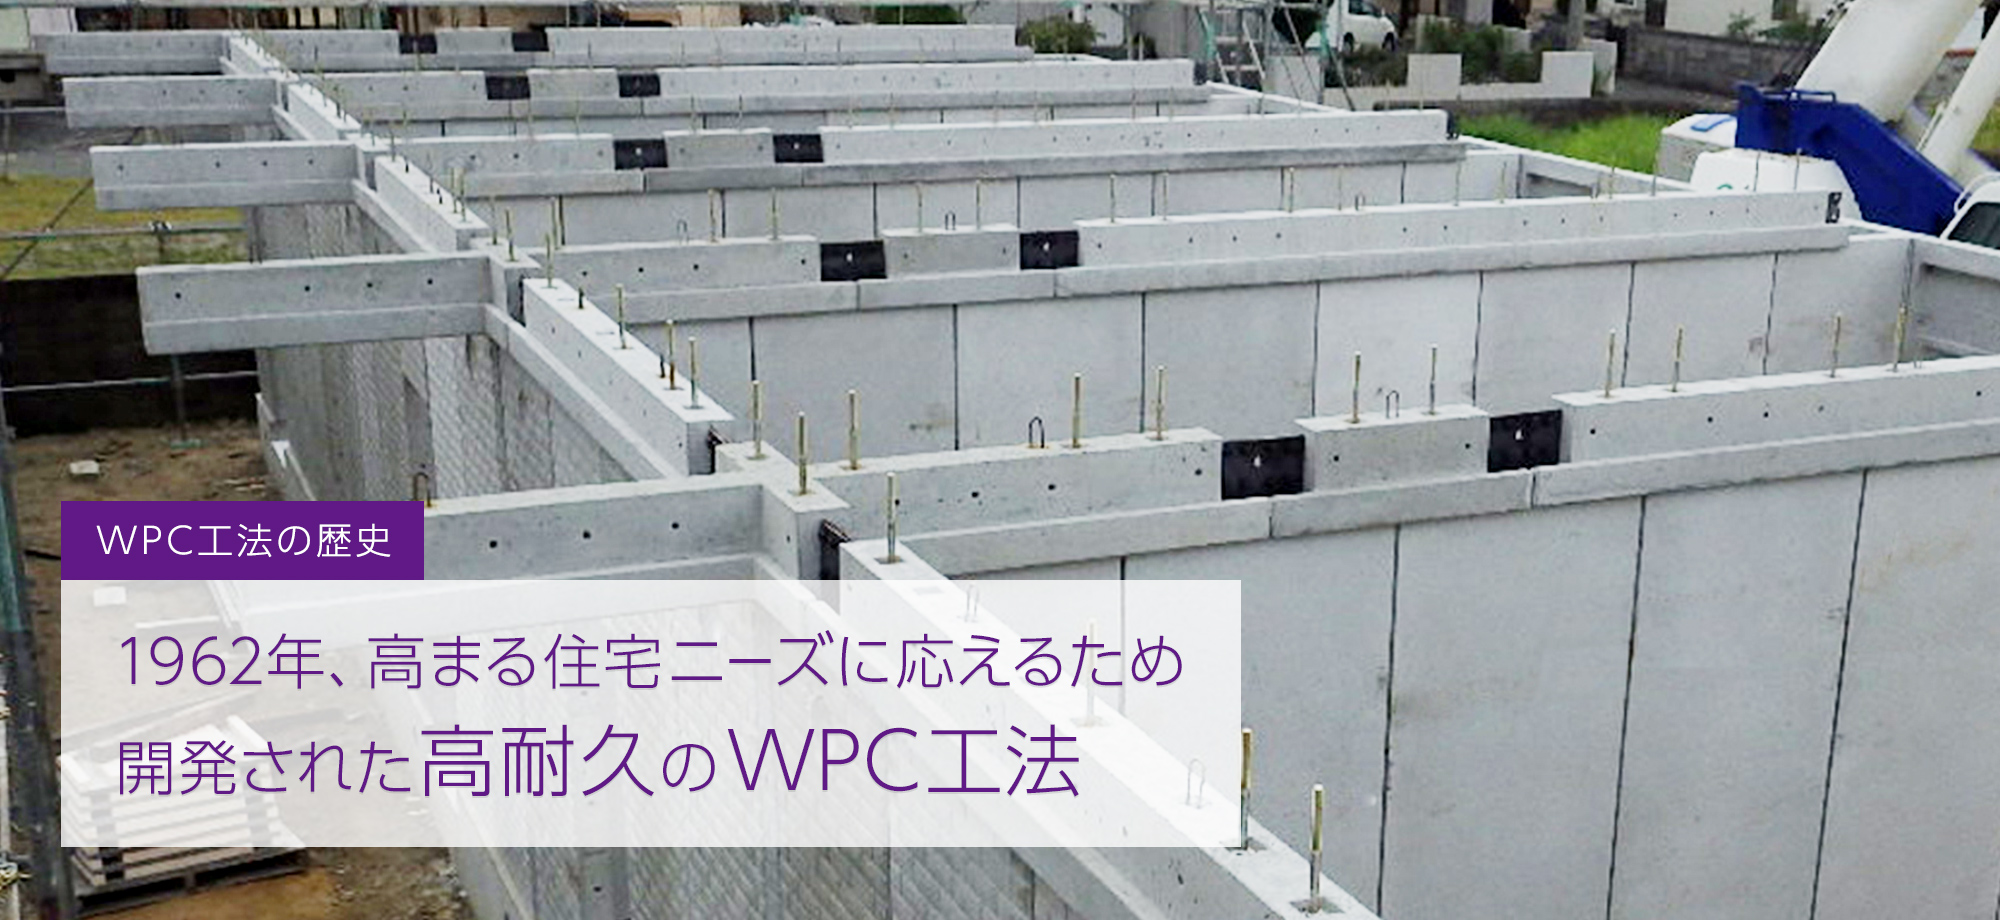 日本の建設省ブレインによって開発されたWPC工法